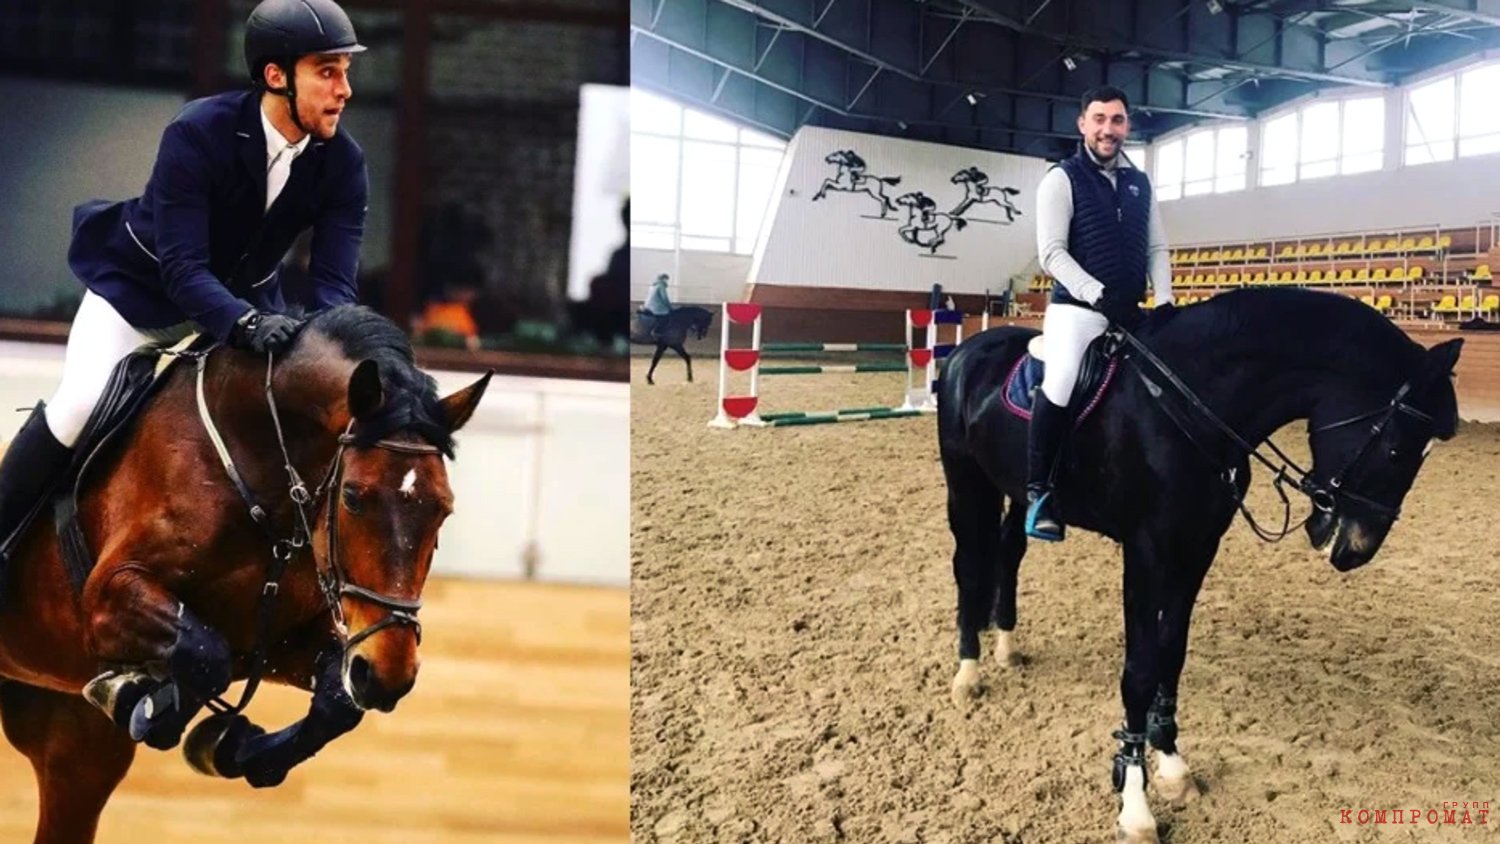 Cын Дмитрия Пескова стал советником экс-супруги Игоря Сечина. Он будет помогать ей развивать конный спорт